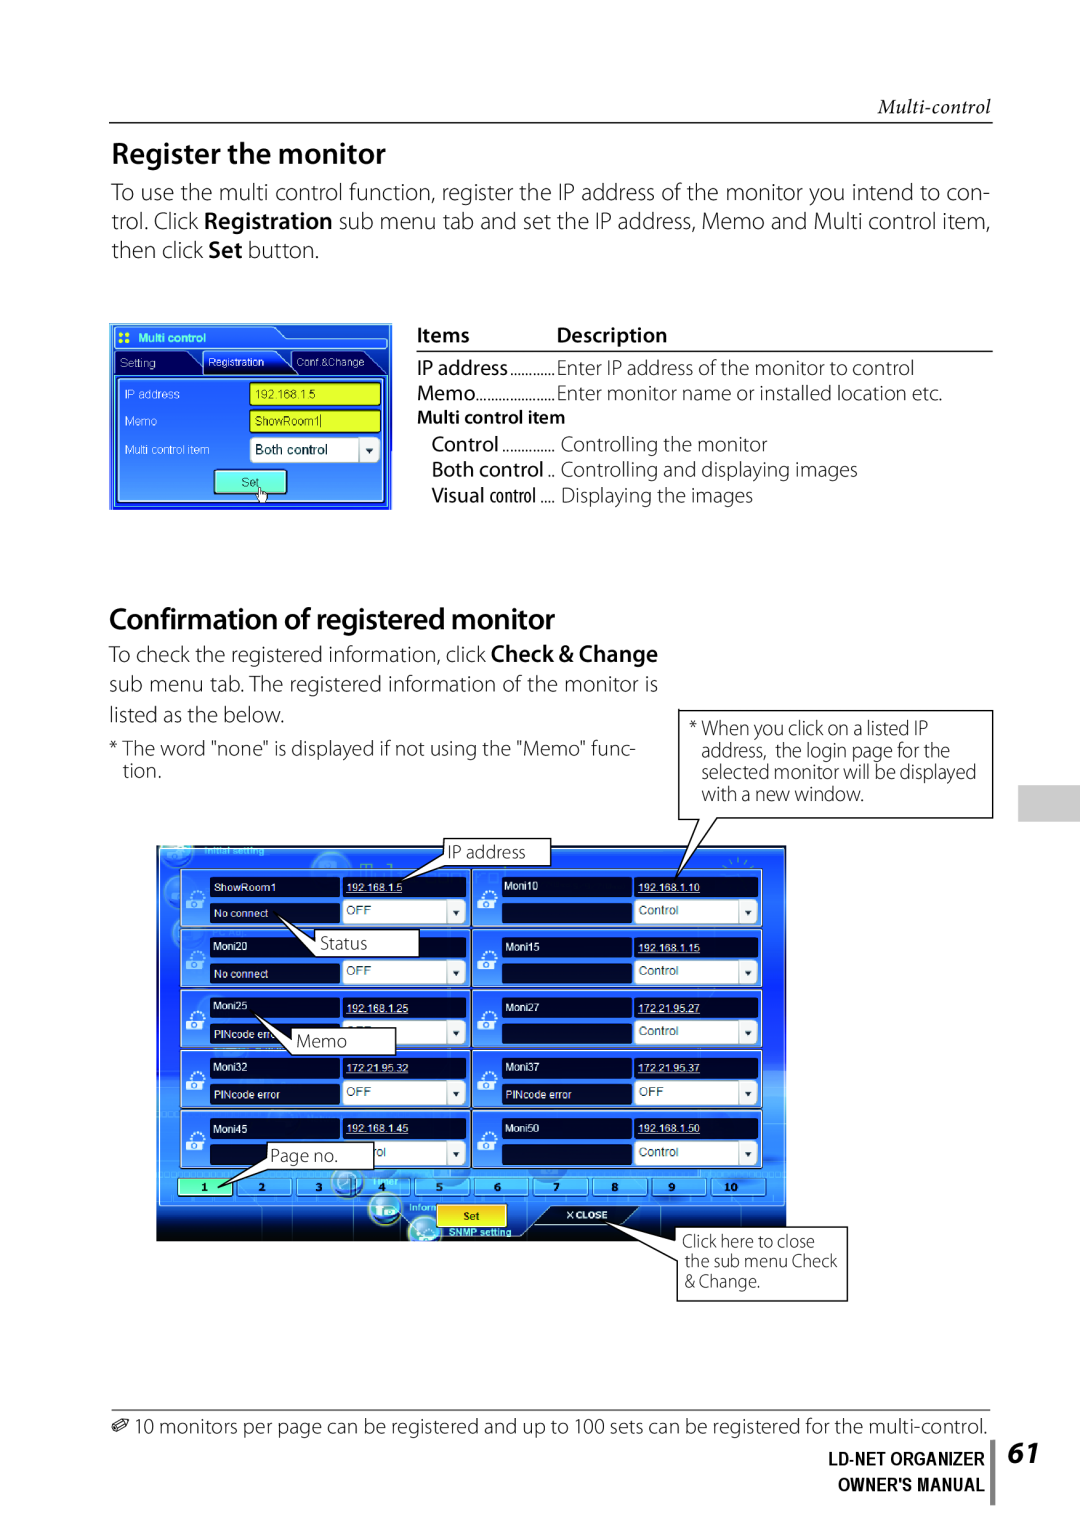 Sanyo POA-LN02 Register the monitor, Confirmation of registered monitor, Multi-control, Items, Description, Visual control 